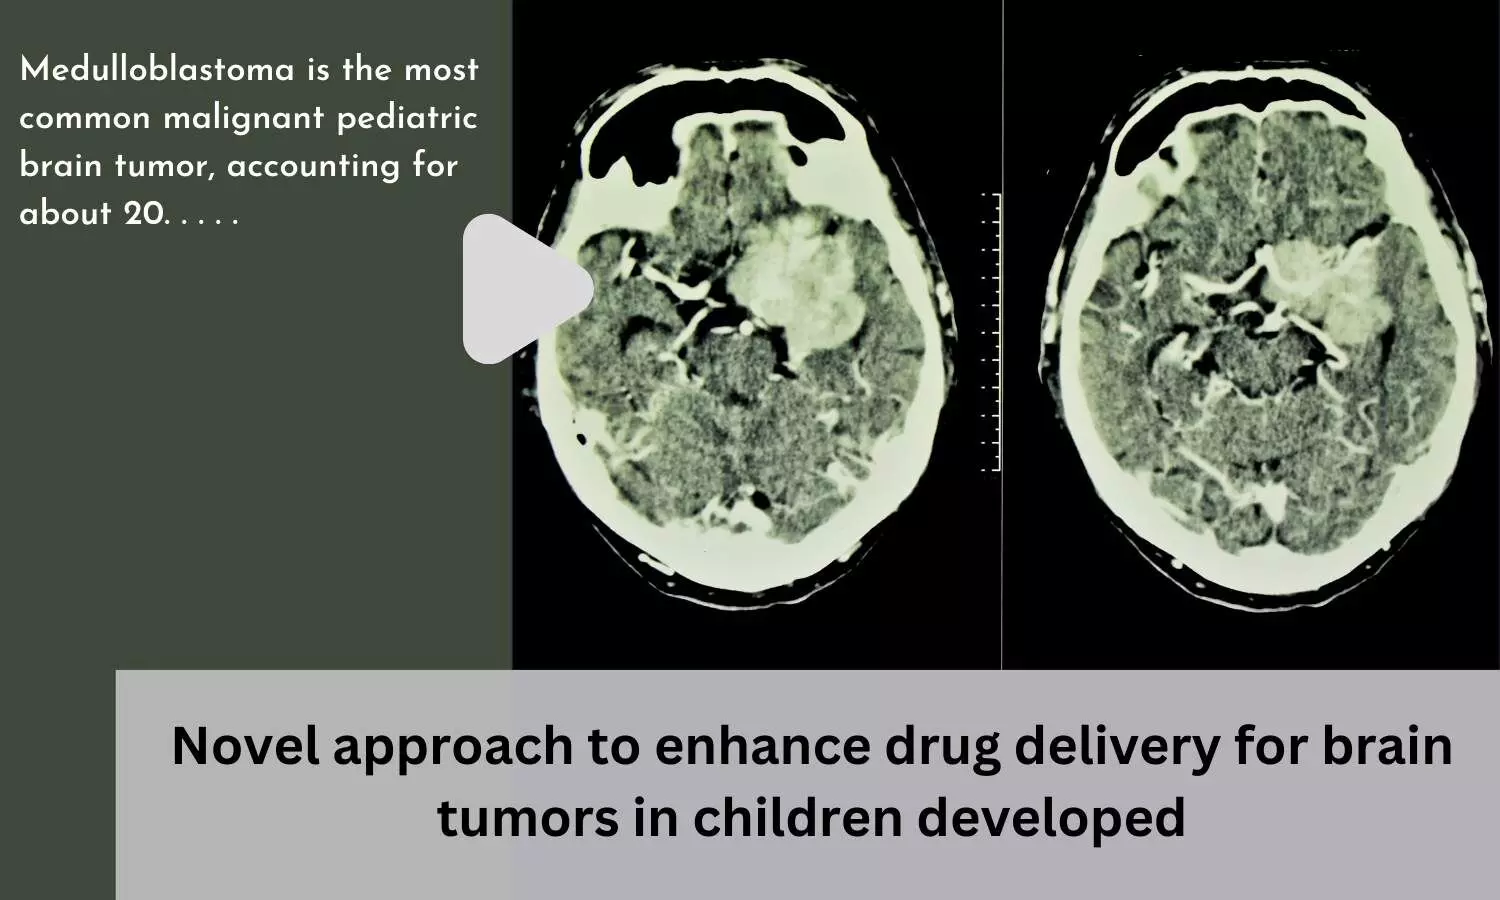 Novel approach to enhance drug delivery for brain tumors in children developed